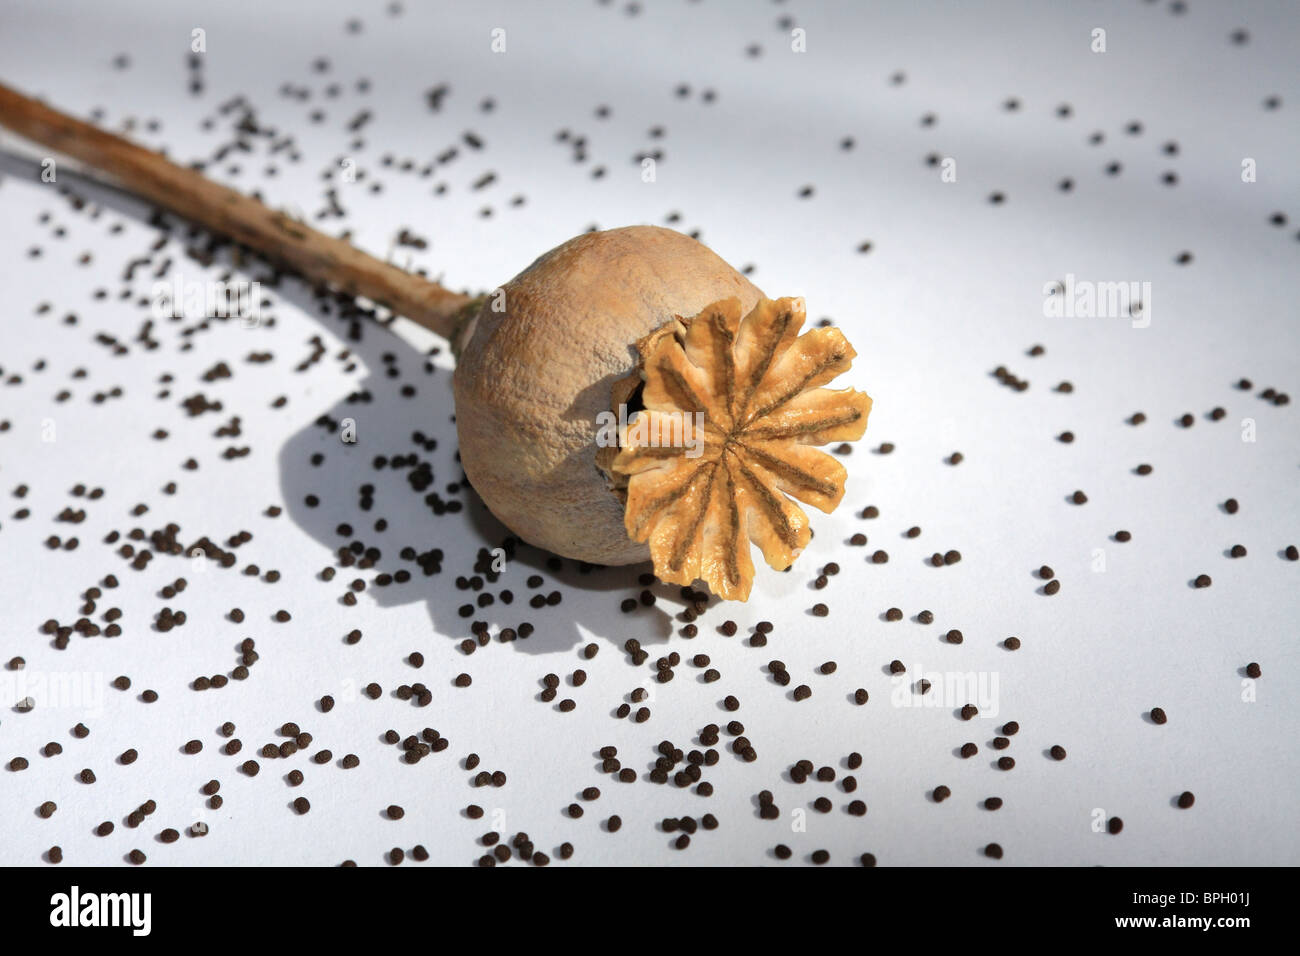 Semilla de amapola cabeza con semillas, Surrey, Inglaterra. Foto de stock